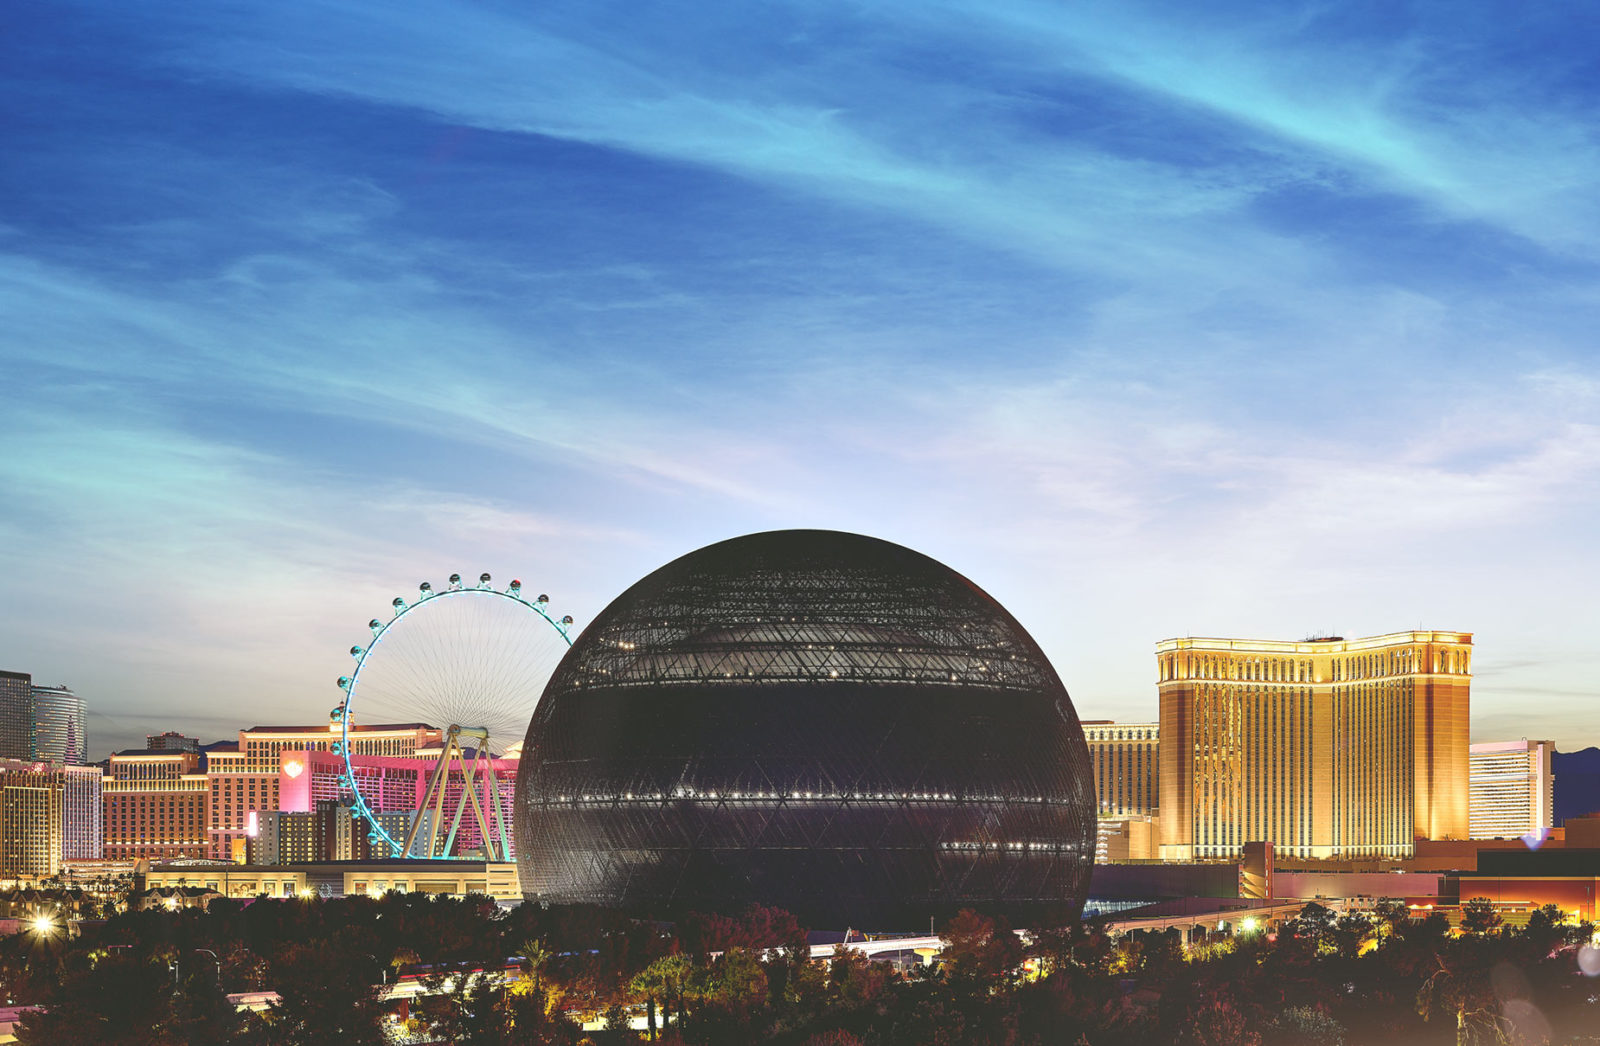 The Sphere in Las Vegas